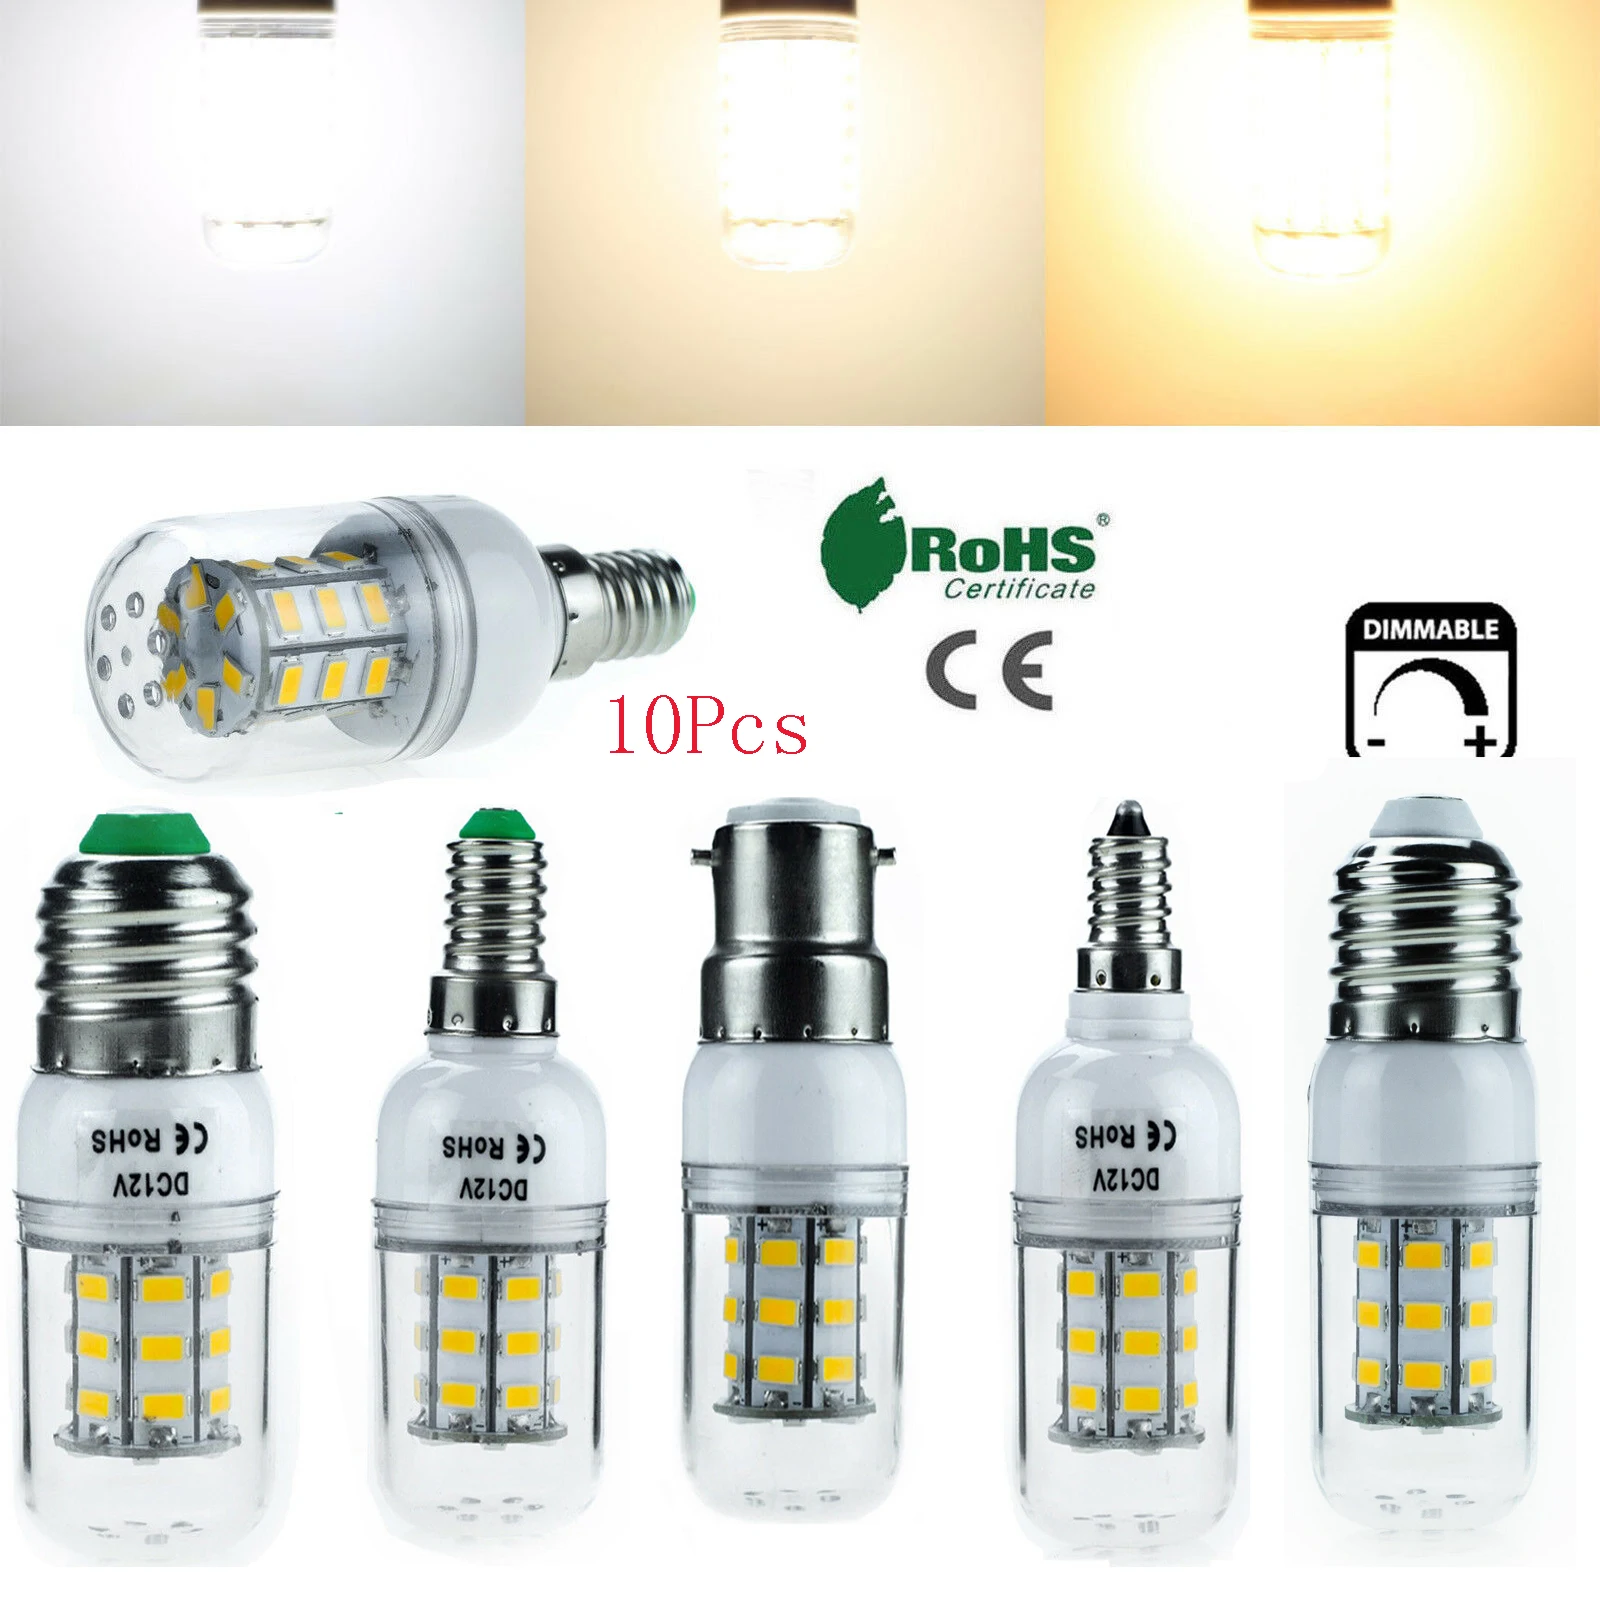 10Pcs/lot Dimmable E27 E14 B22 E12 E26 7W LED Corn Bulbs Light 5730 SMD Lamp Bright 12V 24V